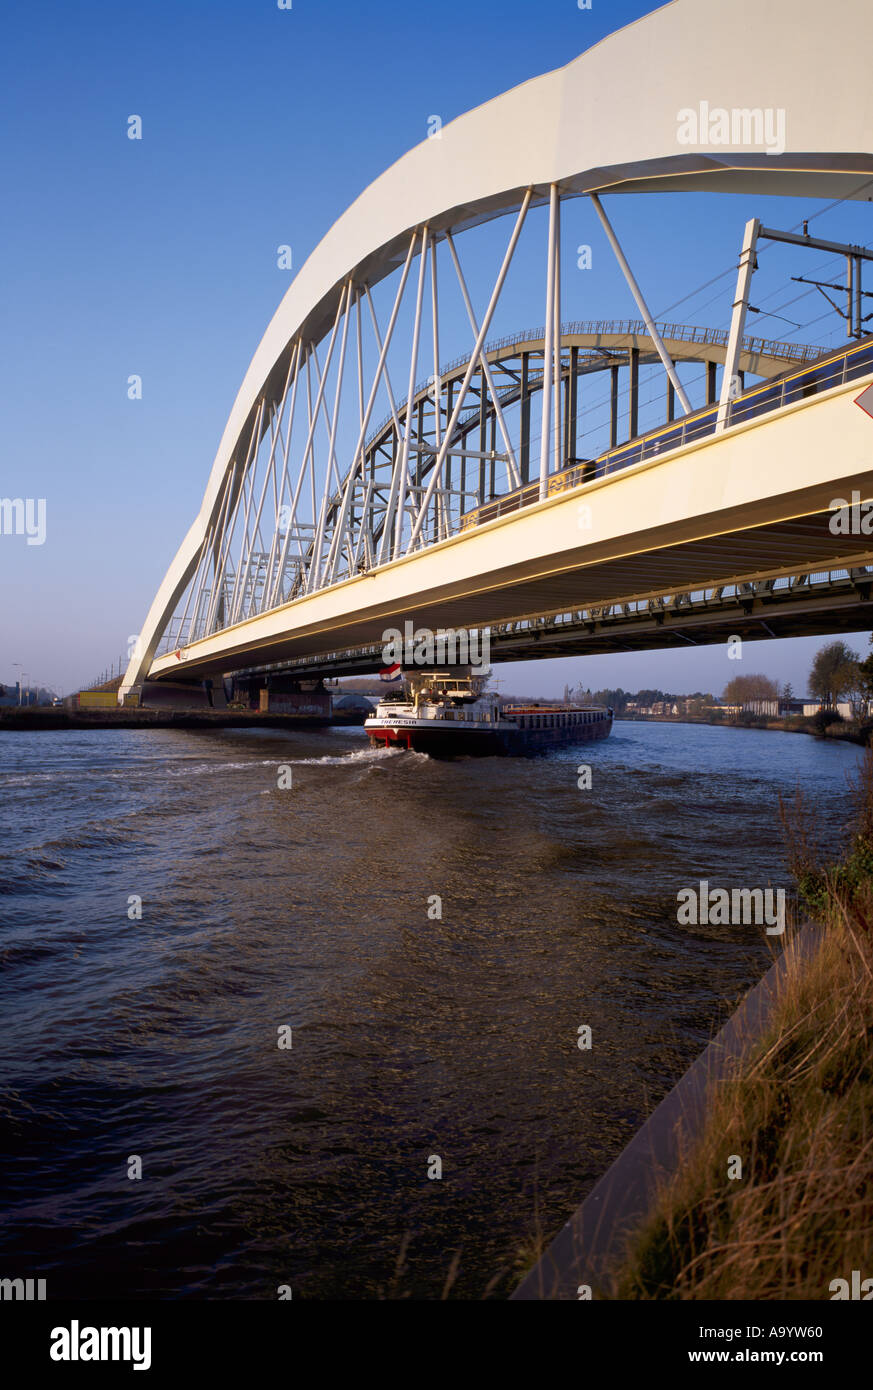 The Werkspoorbrug railway bridge crossing the Amsterdam-Rijnkanalat Utrecht Holland Stock Photo